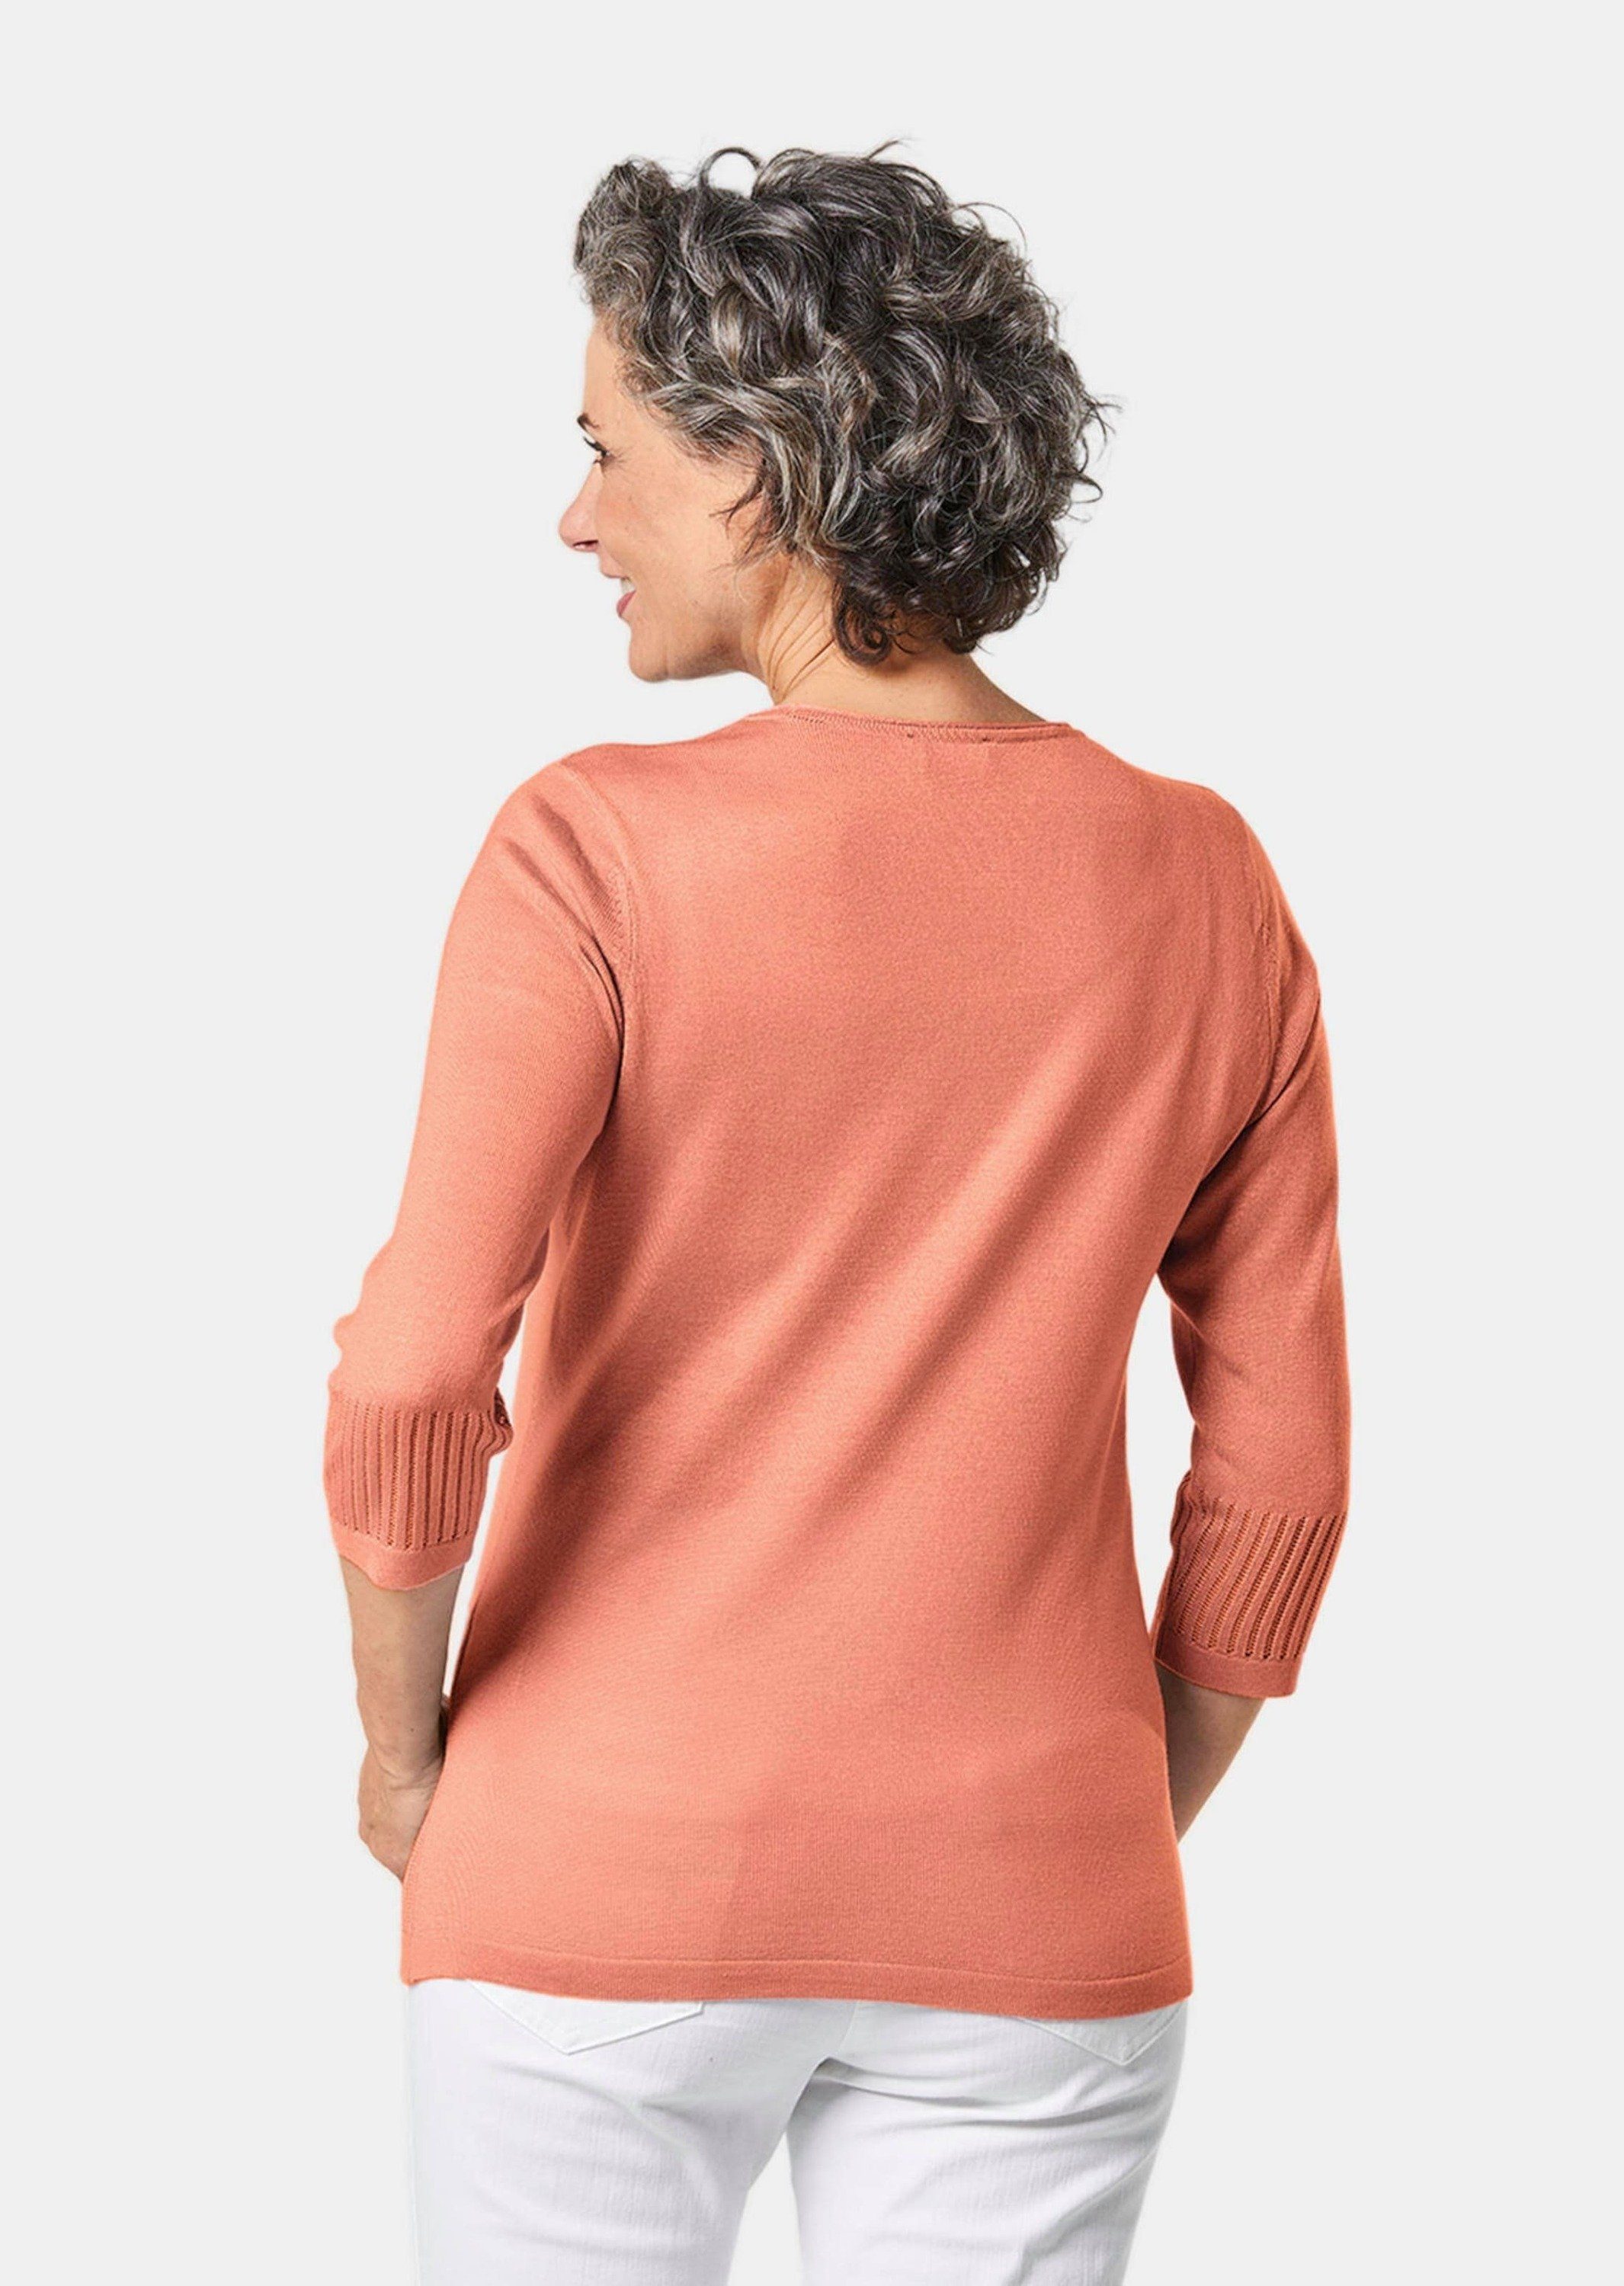 Arm-Pullover mit Durchbrüchen Gepflegter 3/4 femininen melone Ajour-Pullover GOLDNER